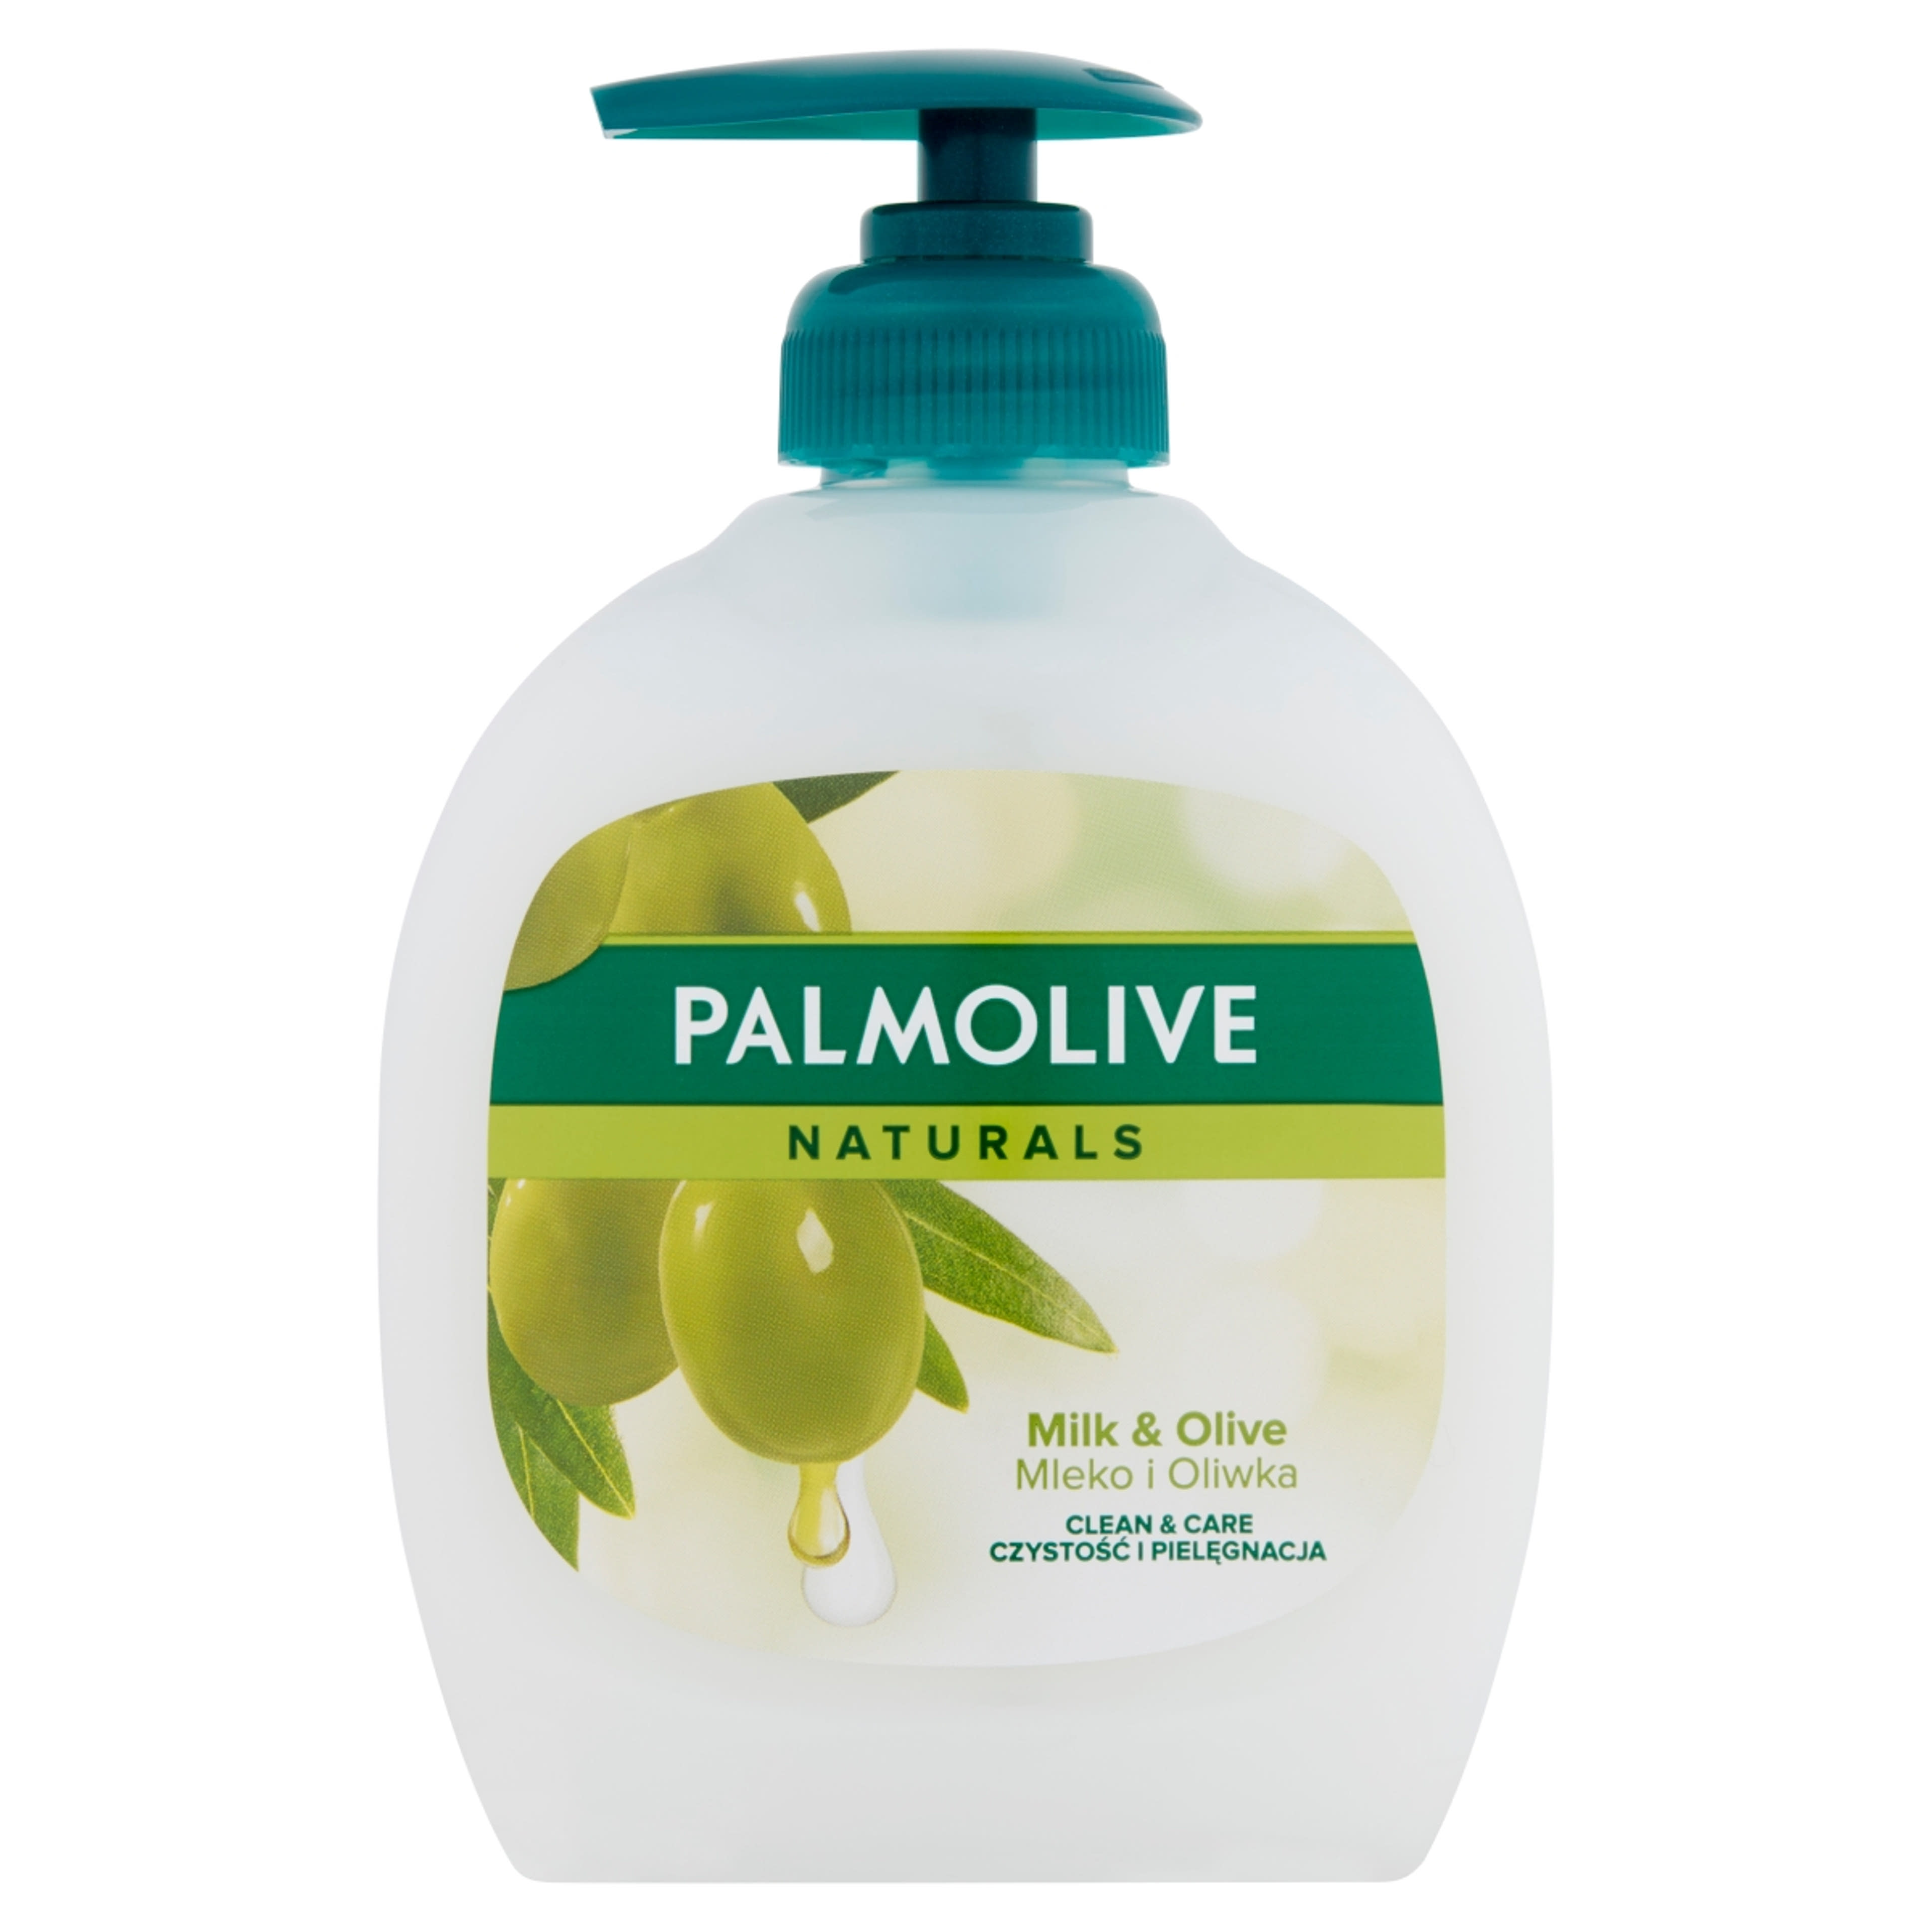 Palmolive Naturals Milk & Olive folyékony szappan - 300 ml